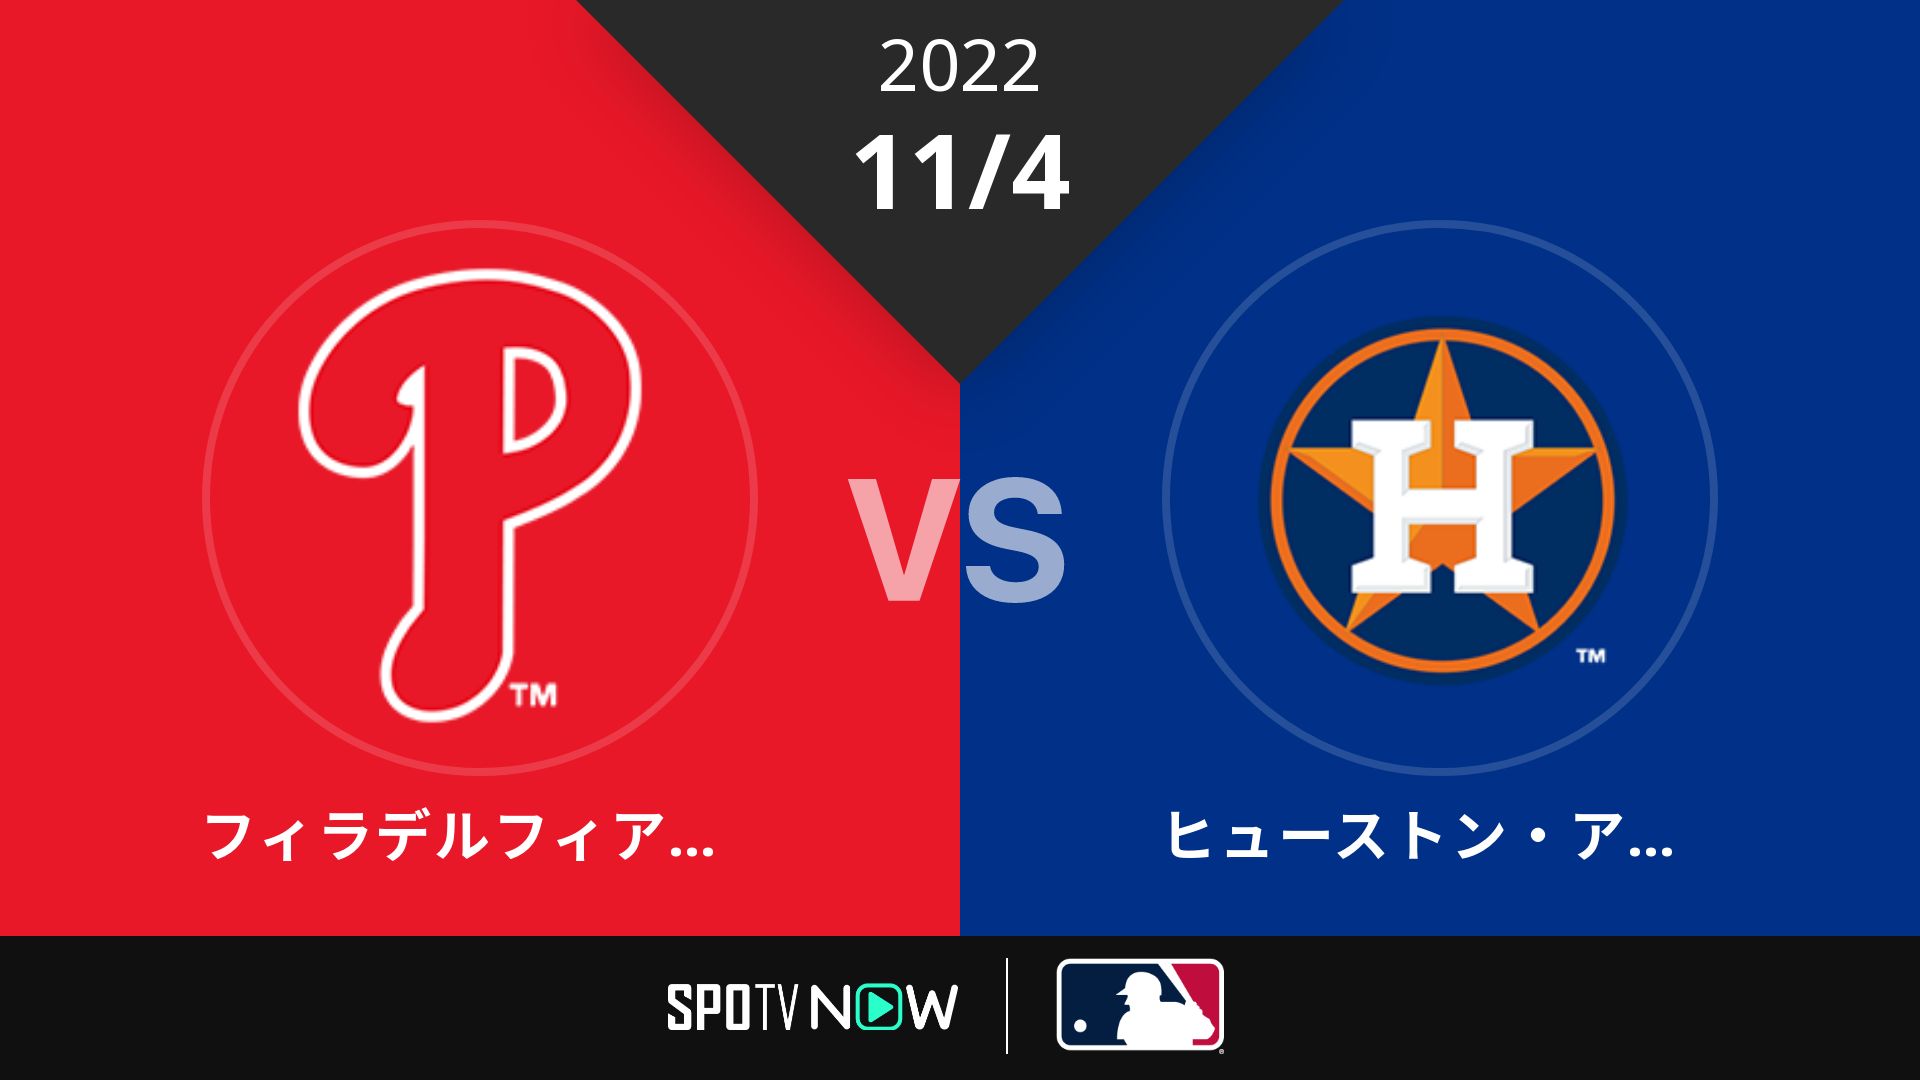 2022/11/4 フィリーズ vs アストロズ [MLB]